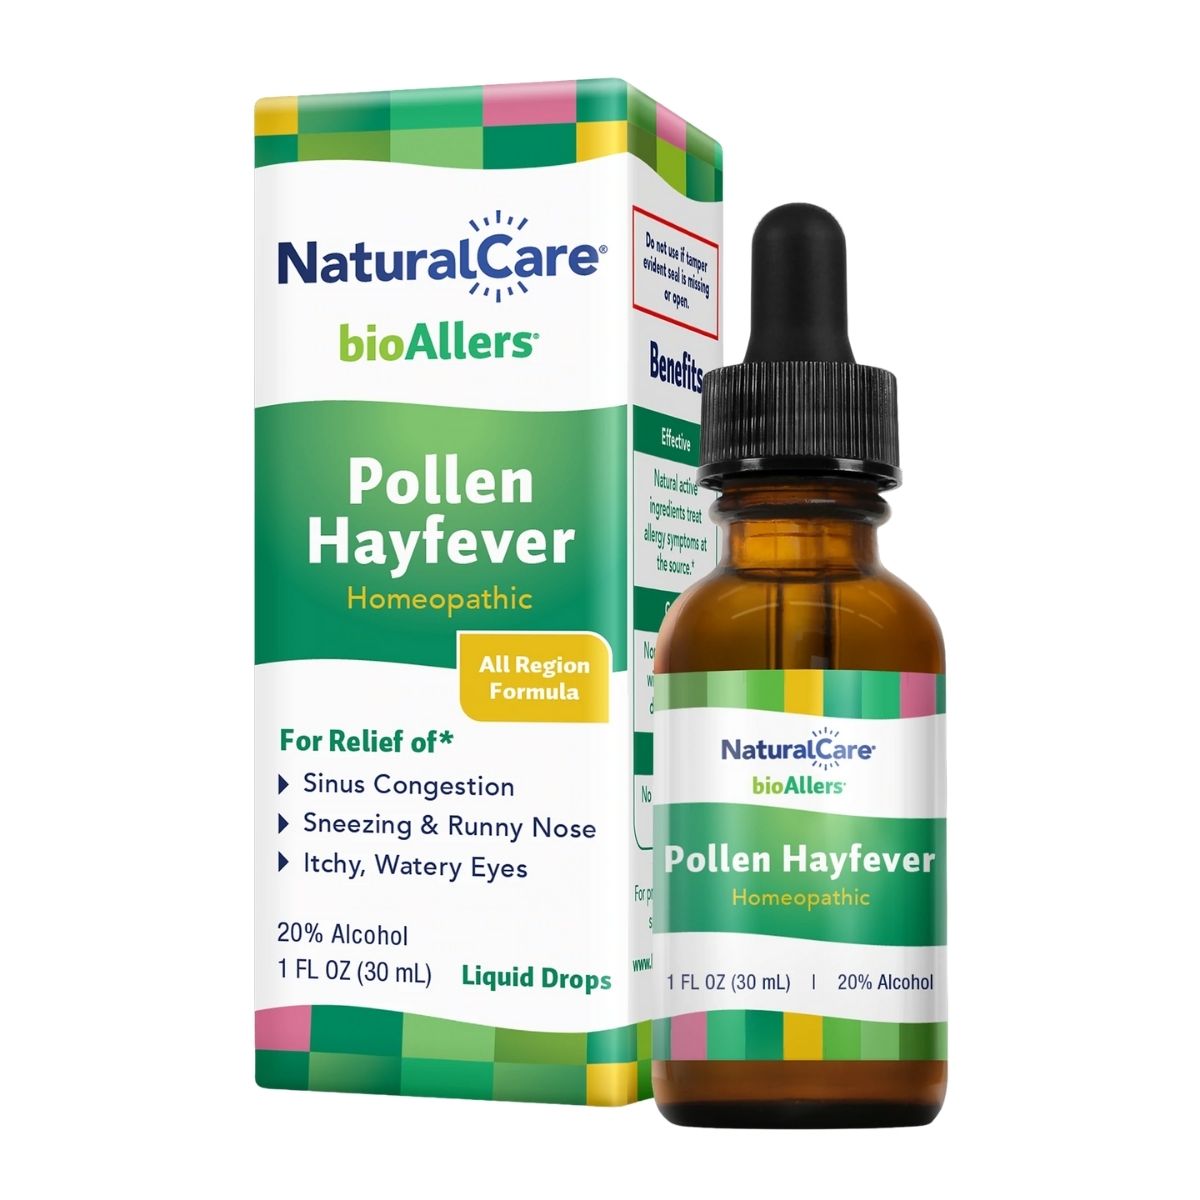 Pollen Hayfever, Homeopathic